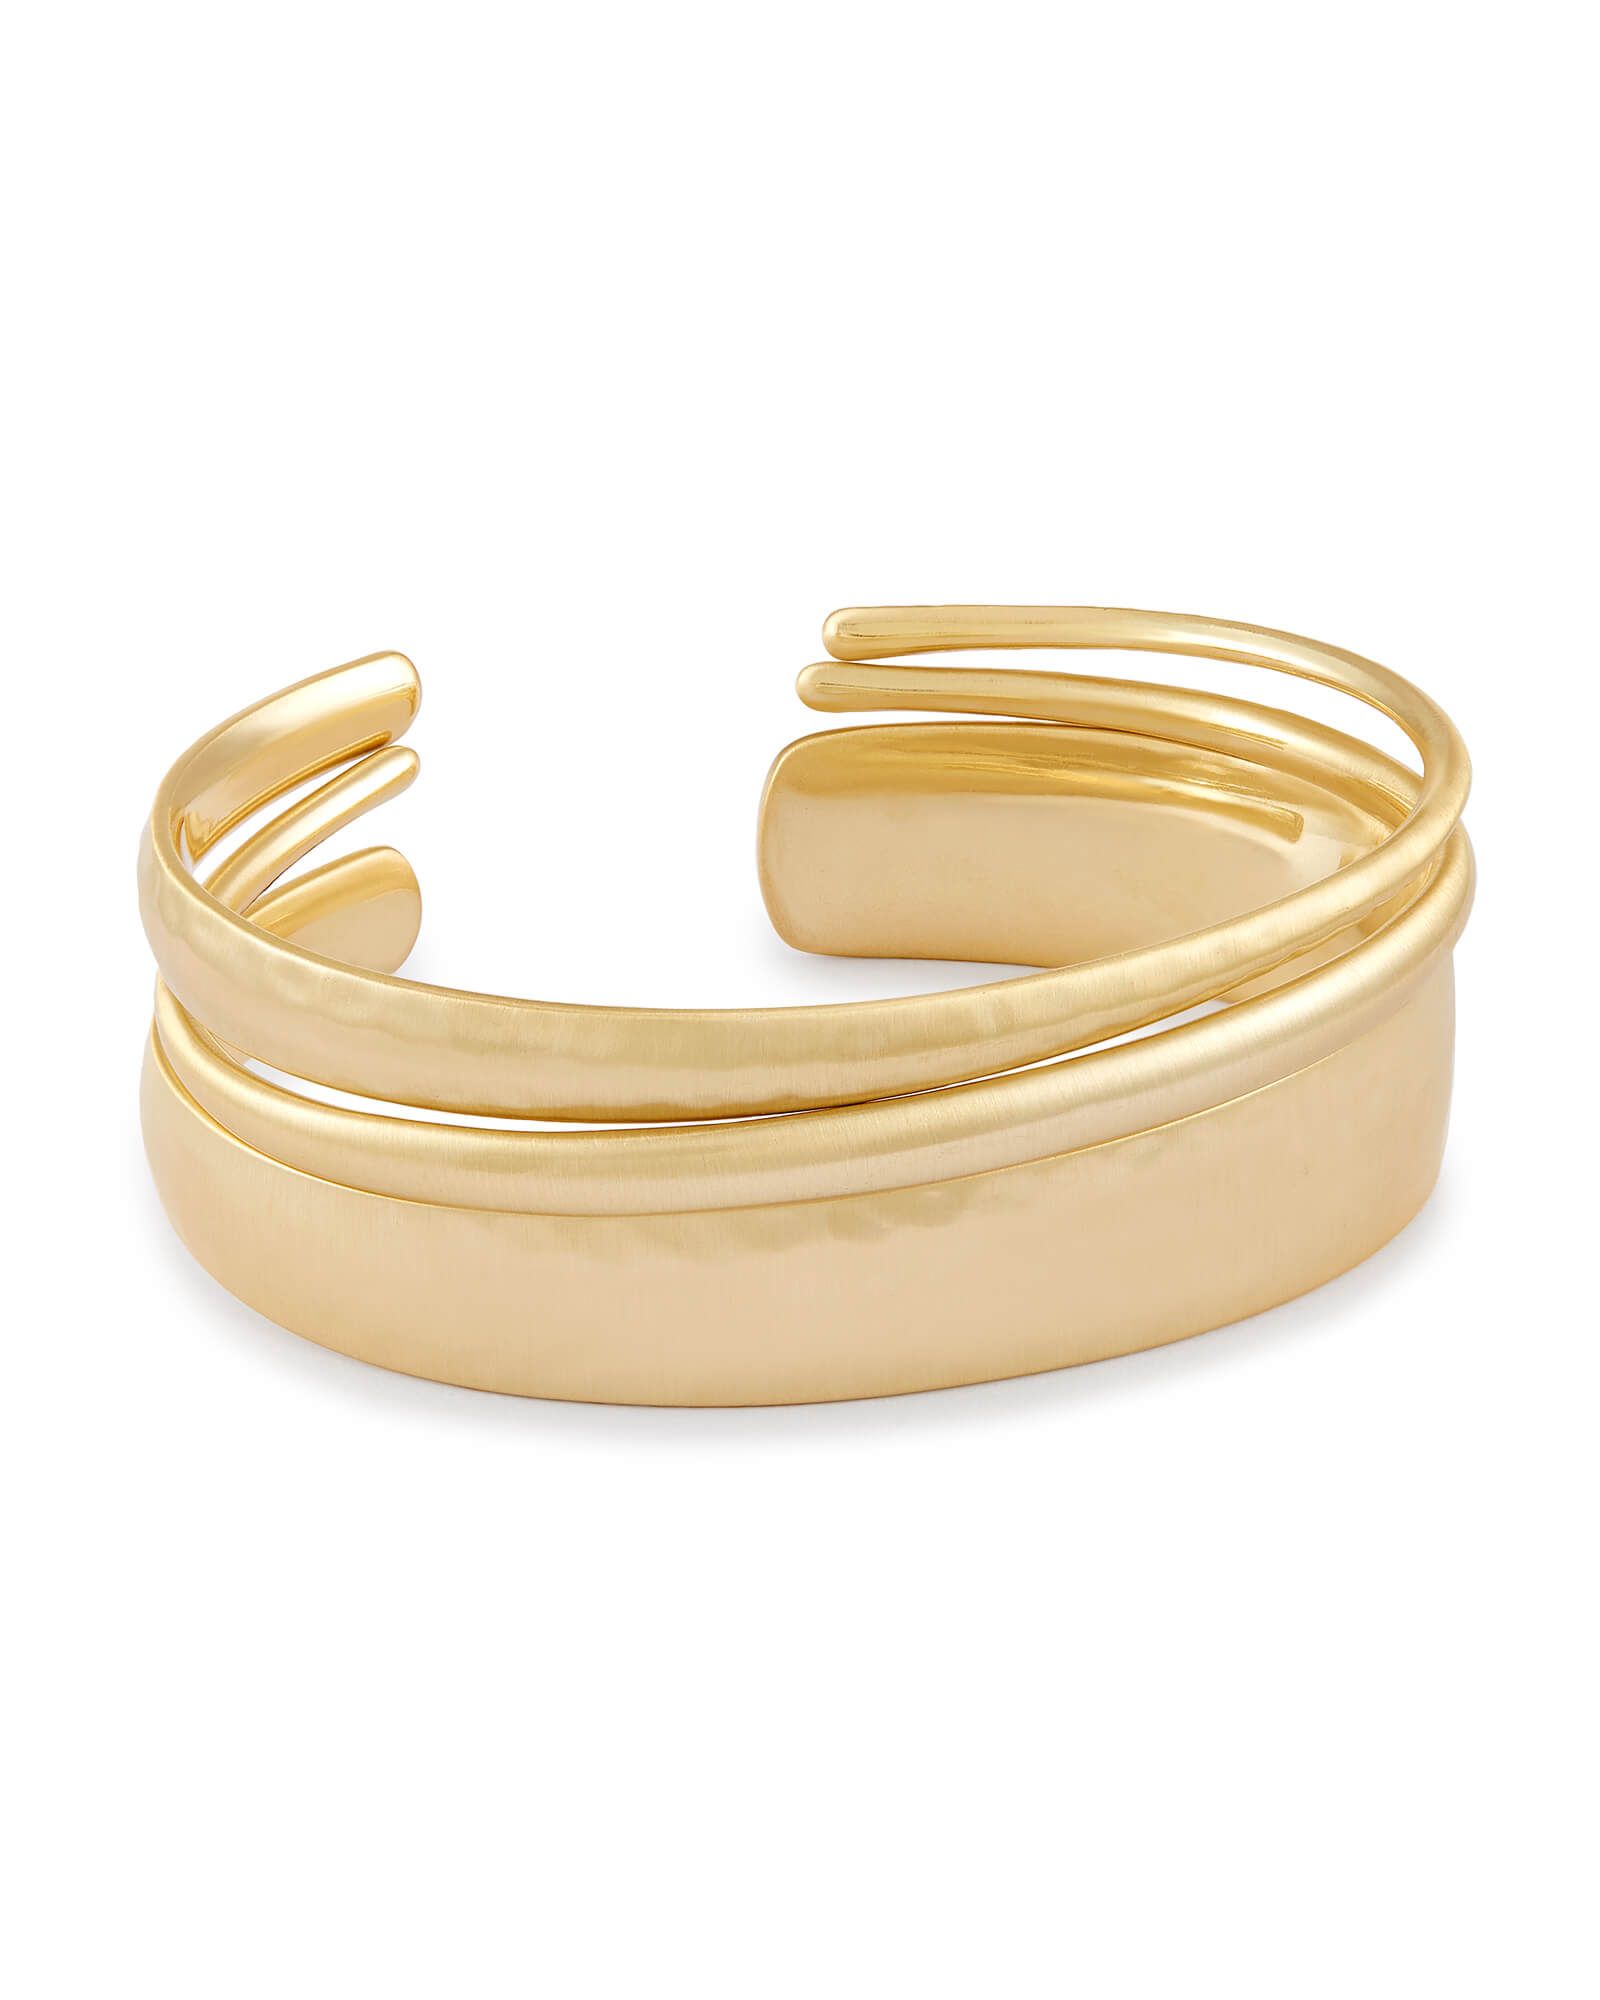 Tiana Pinch Bracelet Set in Gold | KendraScott | Kendra Scott